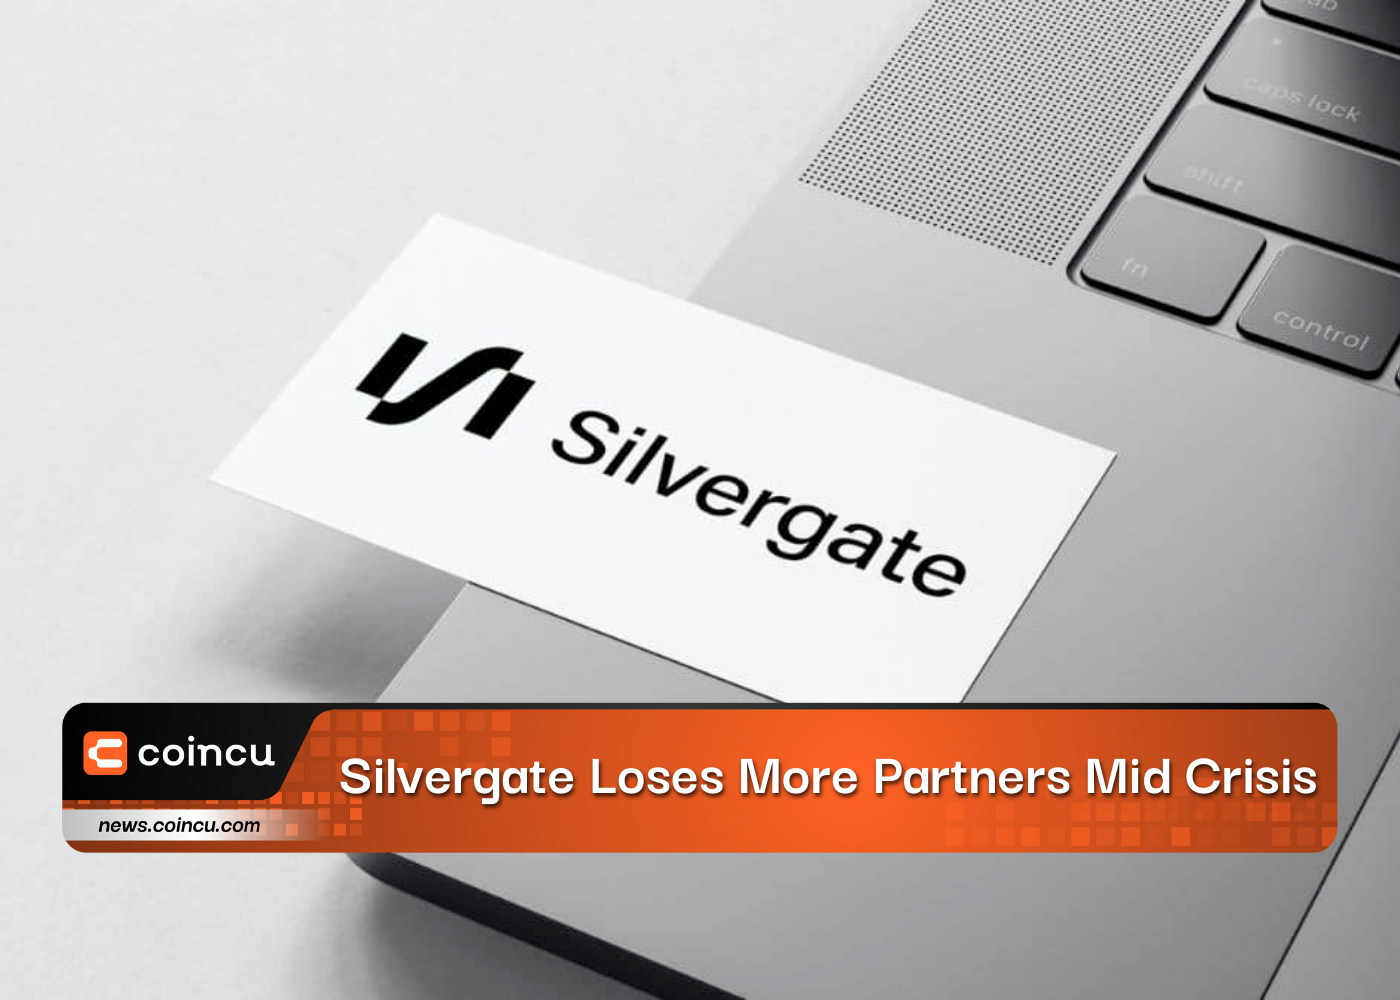 Silvergate pierde más socios en mitad de la crisis